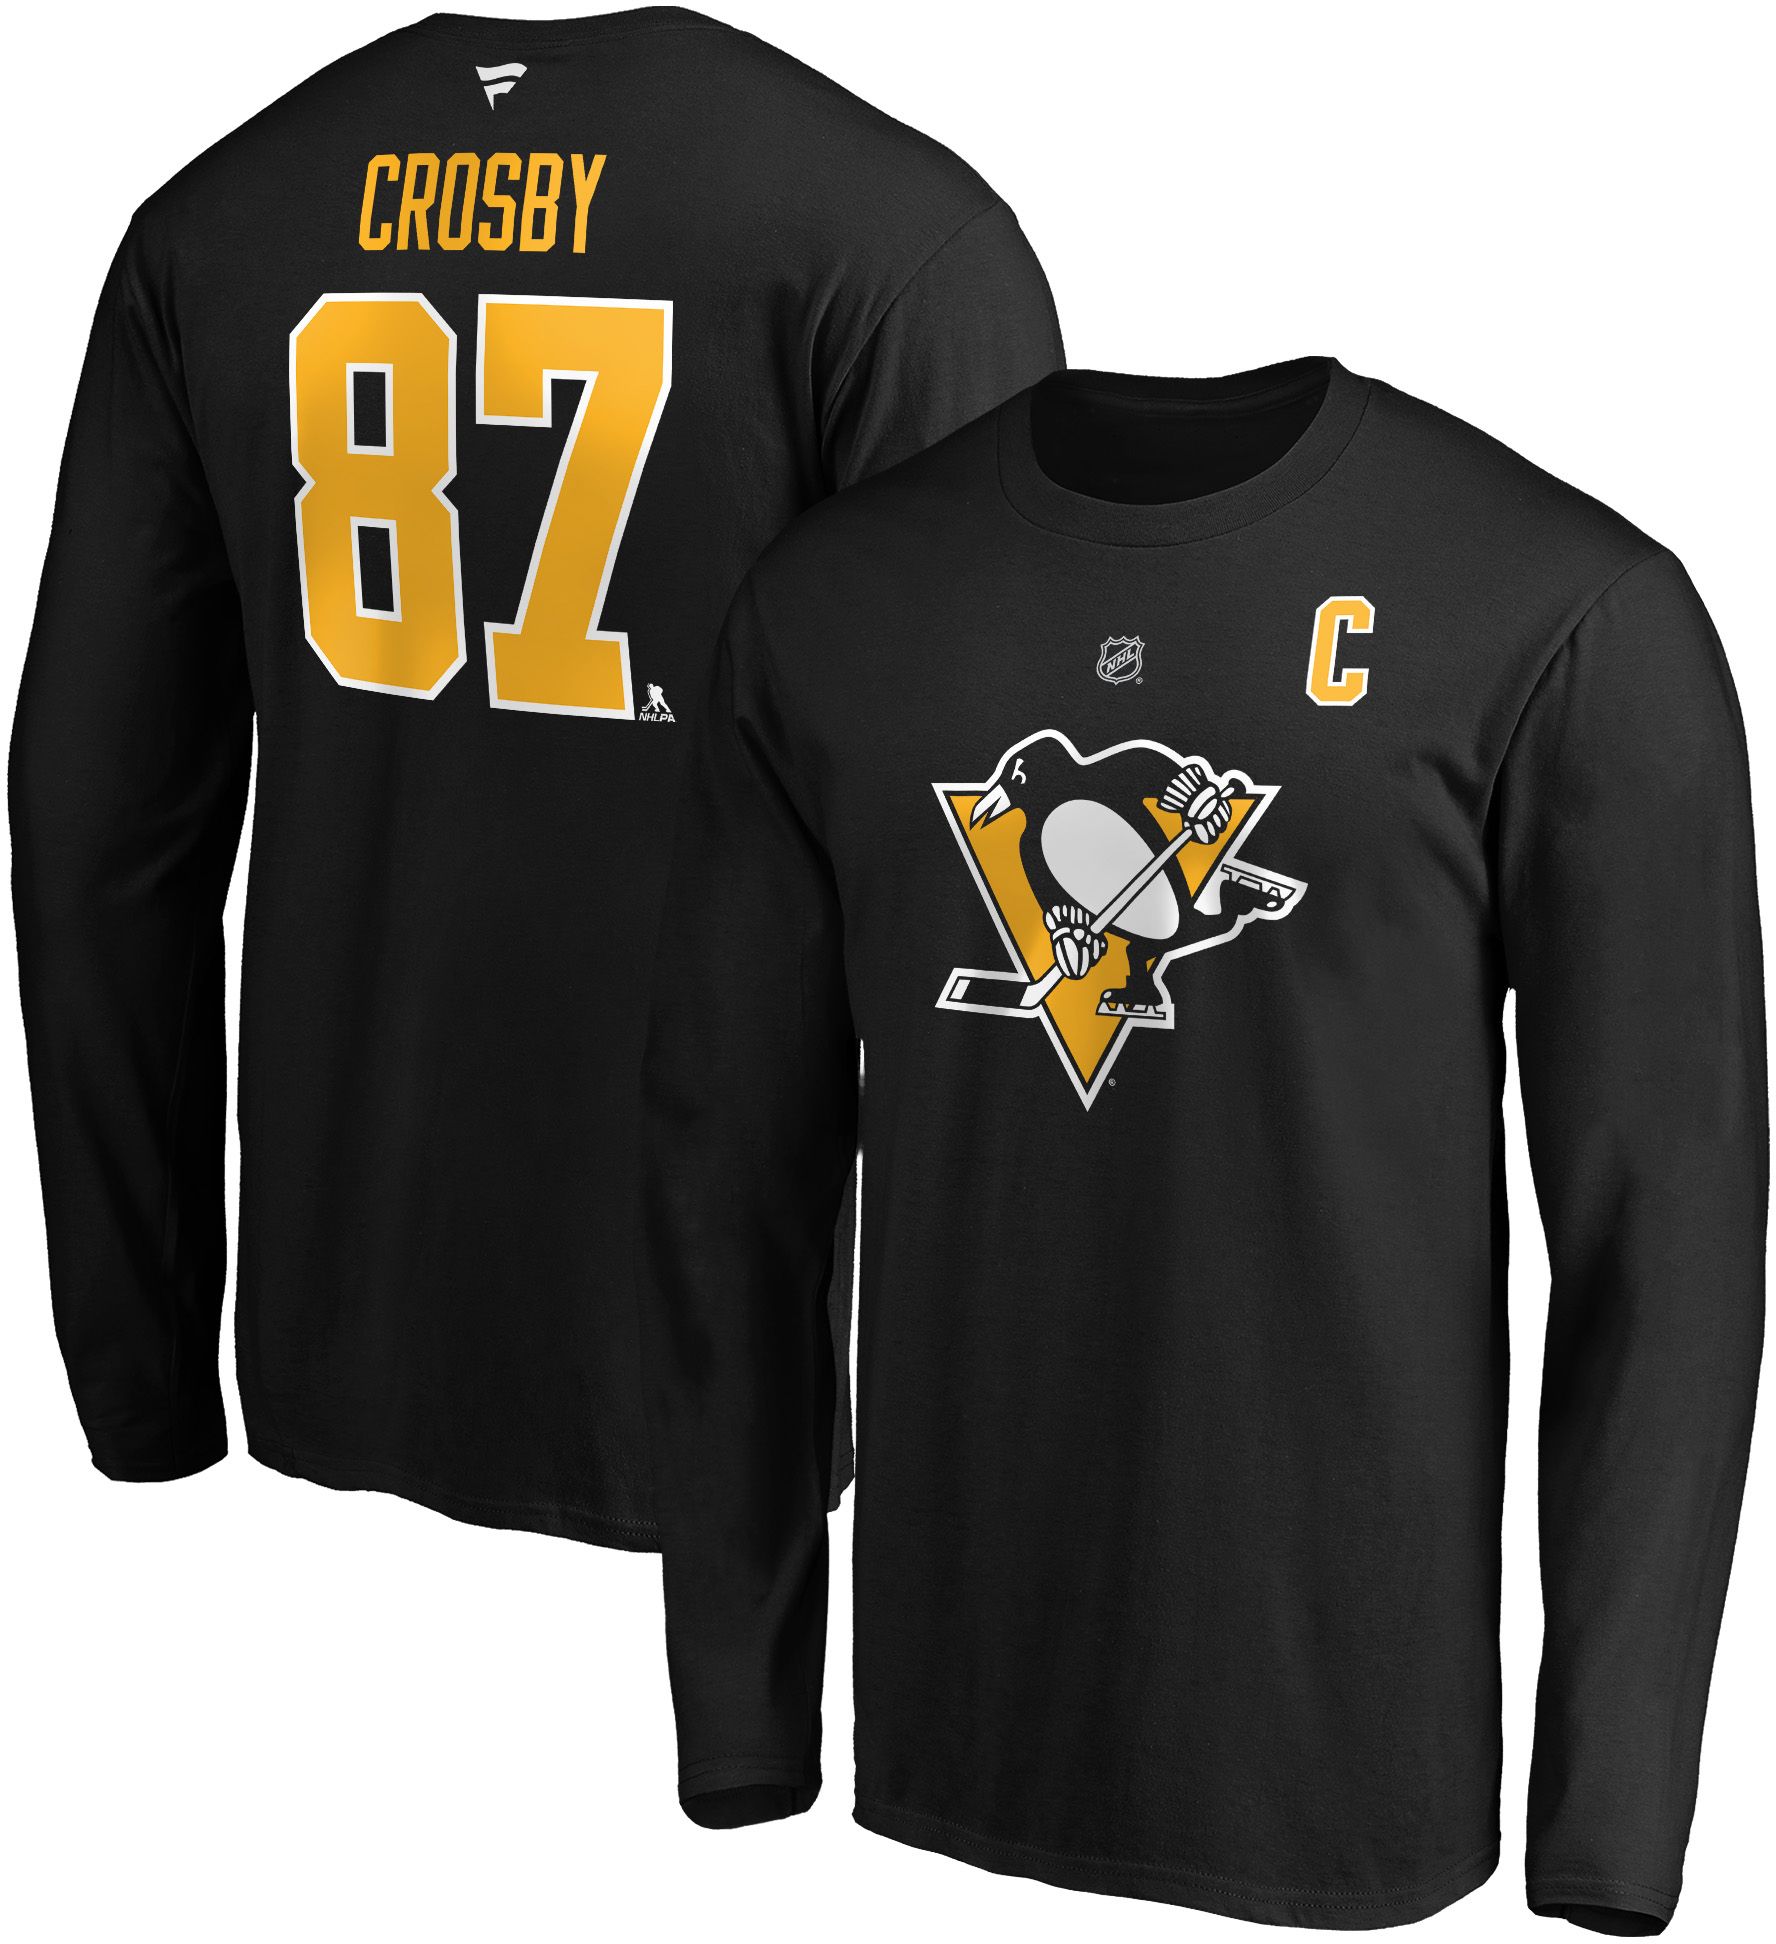 sidney crosby hockey school shirt